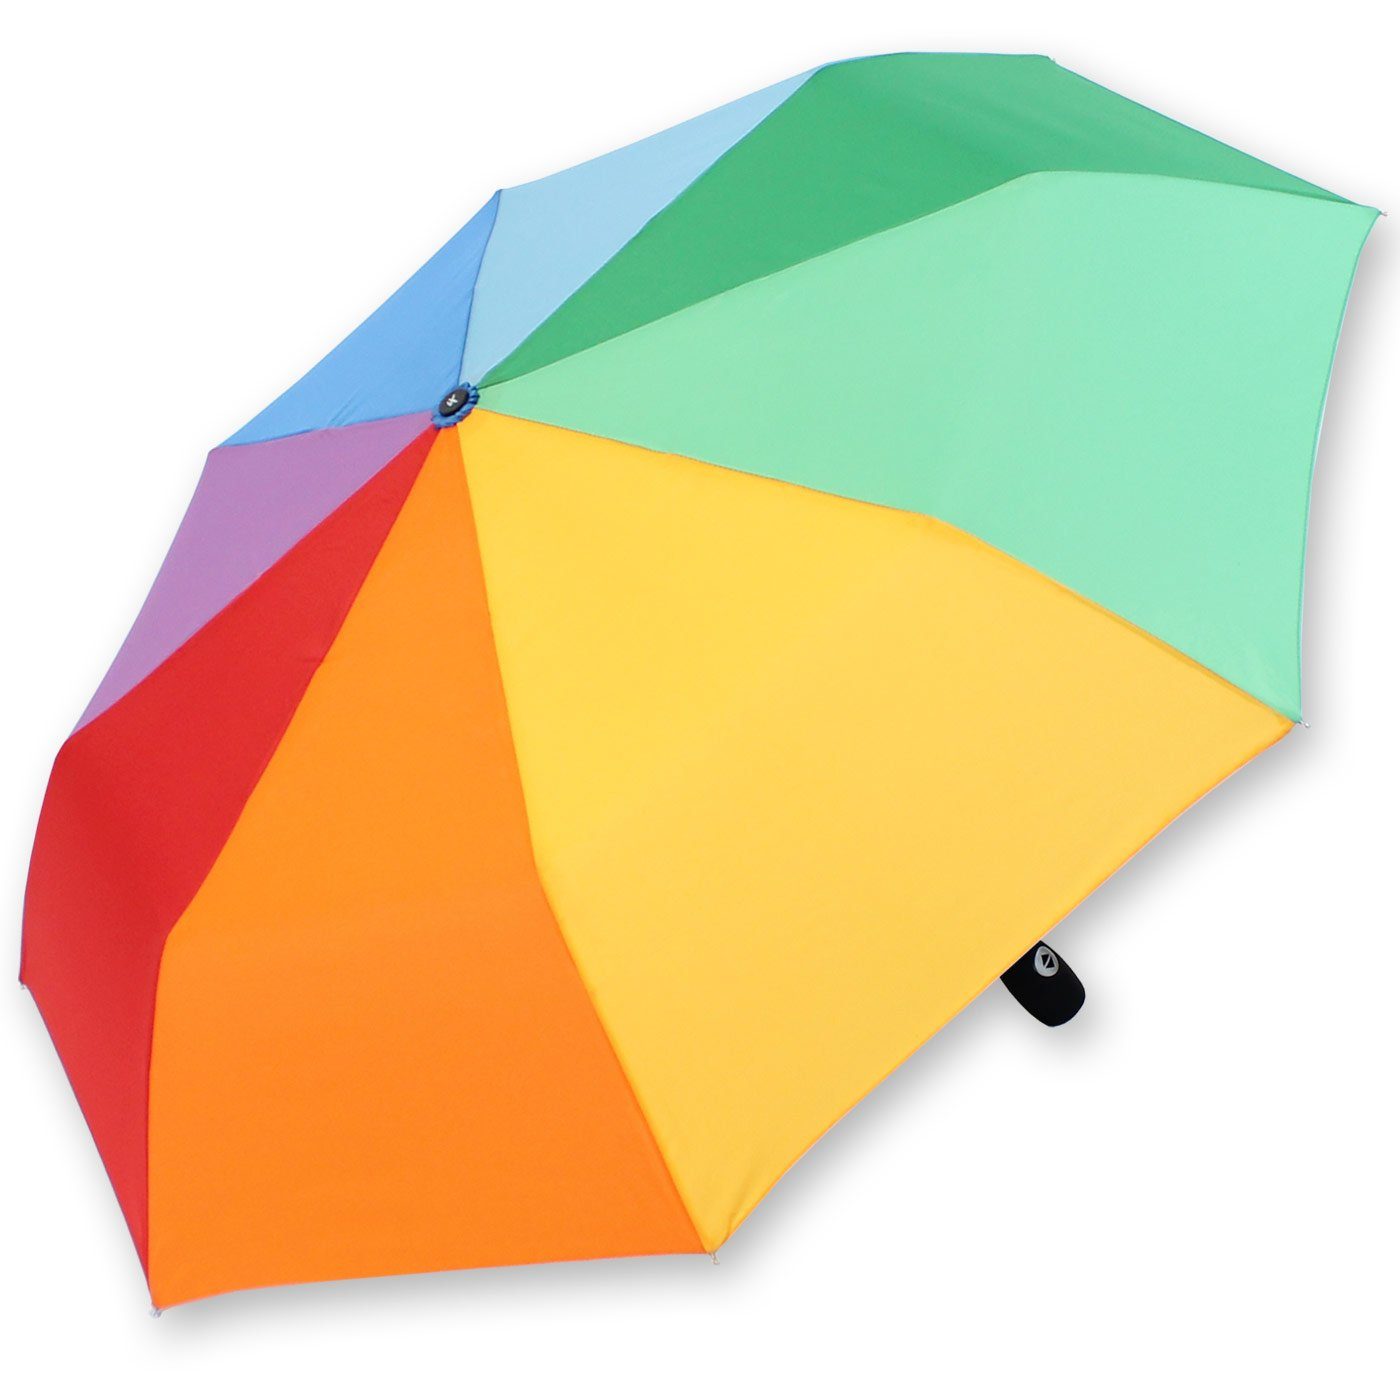 Taschenregenschirm leicht Auf-Zu-Automatik, iX-brella farbenfroh mit Regenbogenschirm Mini